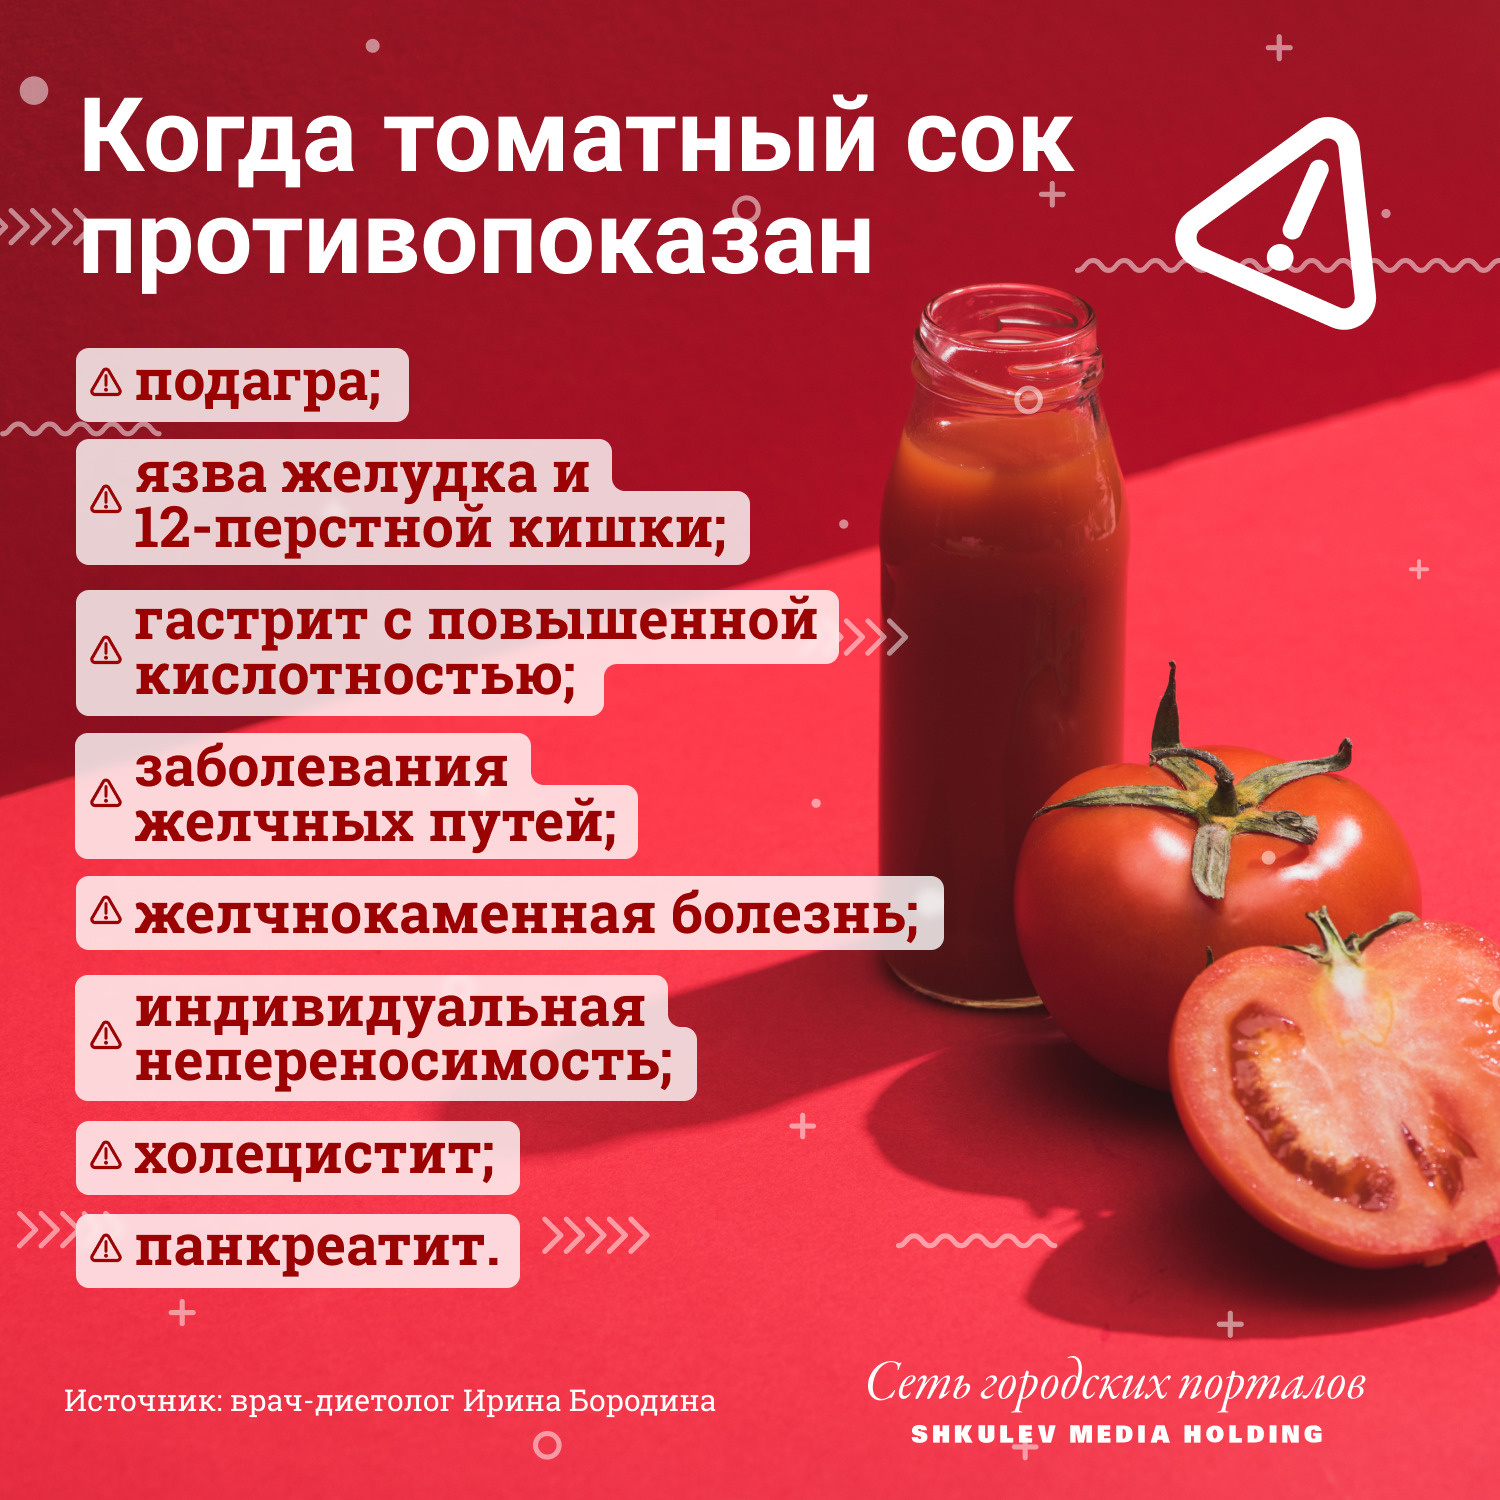 Вкусный томатный сок при беременности